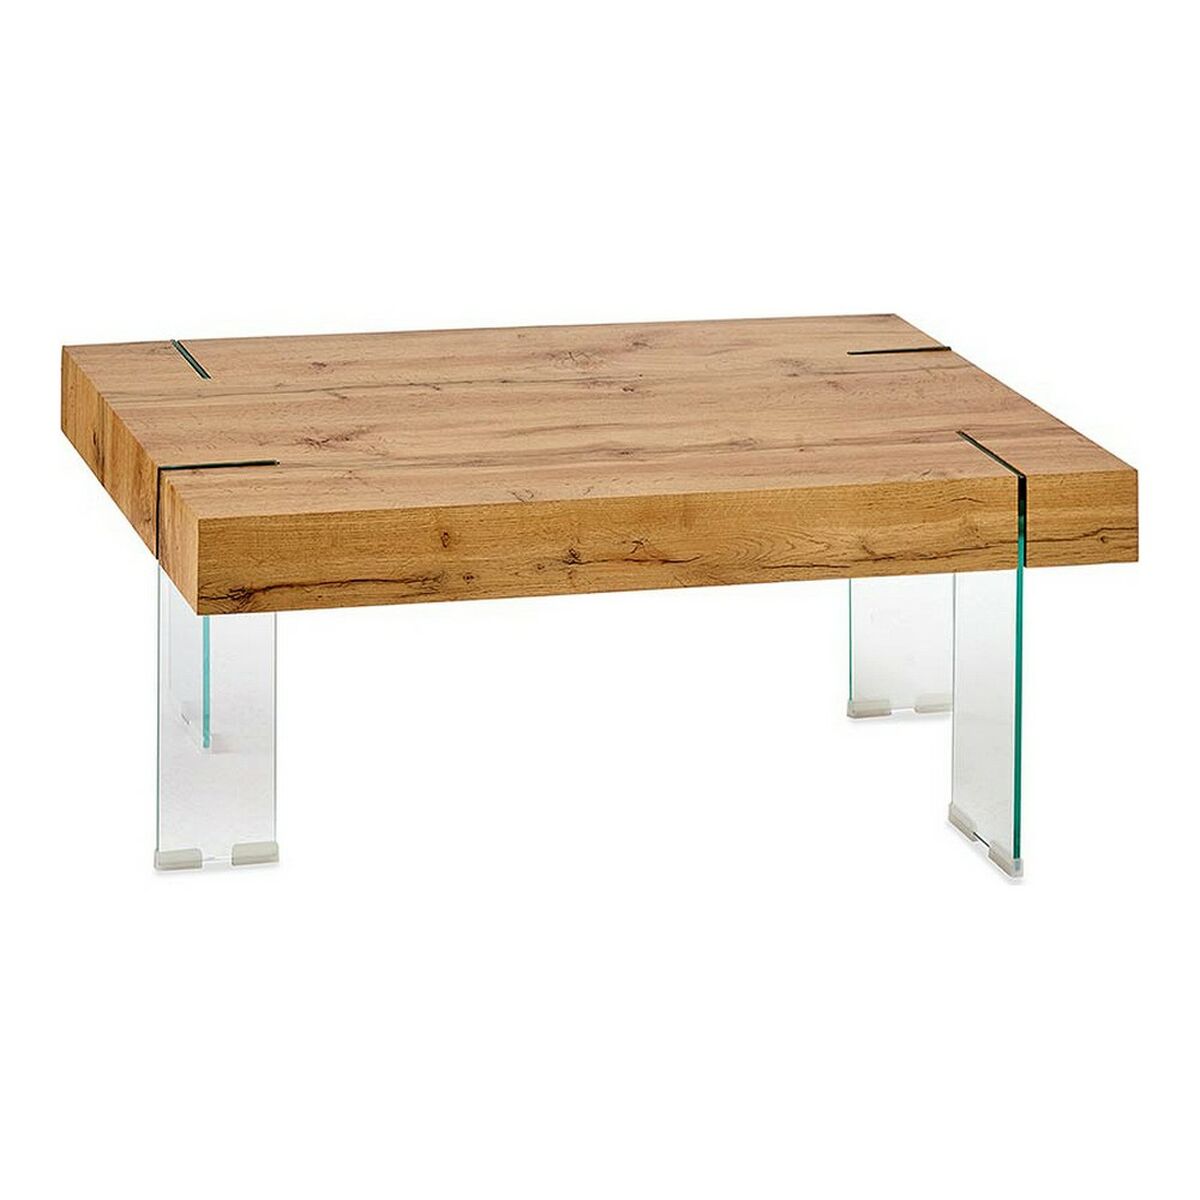 Table Basse Bois verre (60 x 42 x 120 cm)